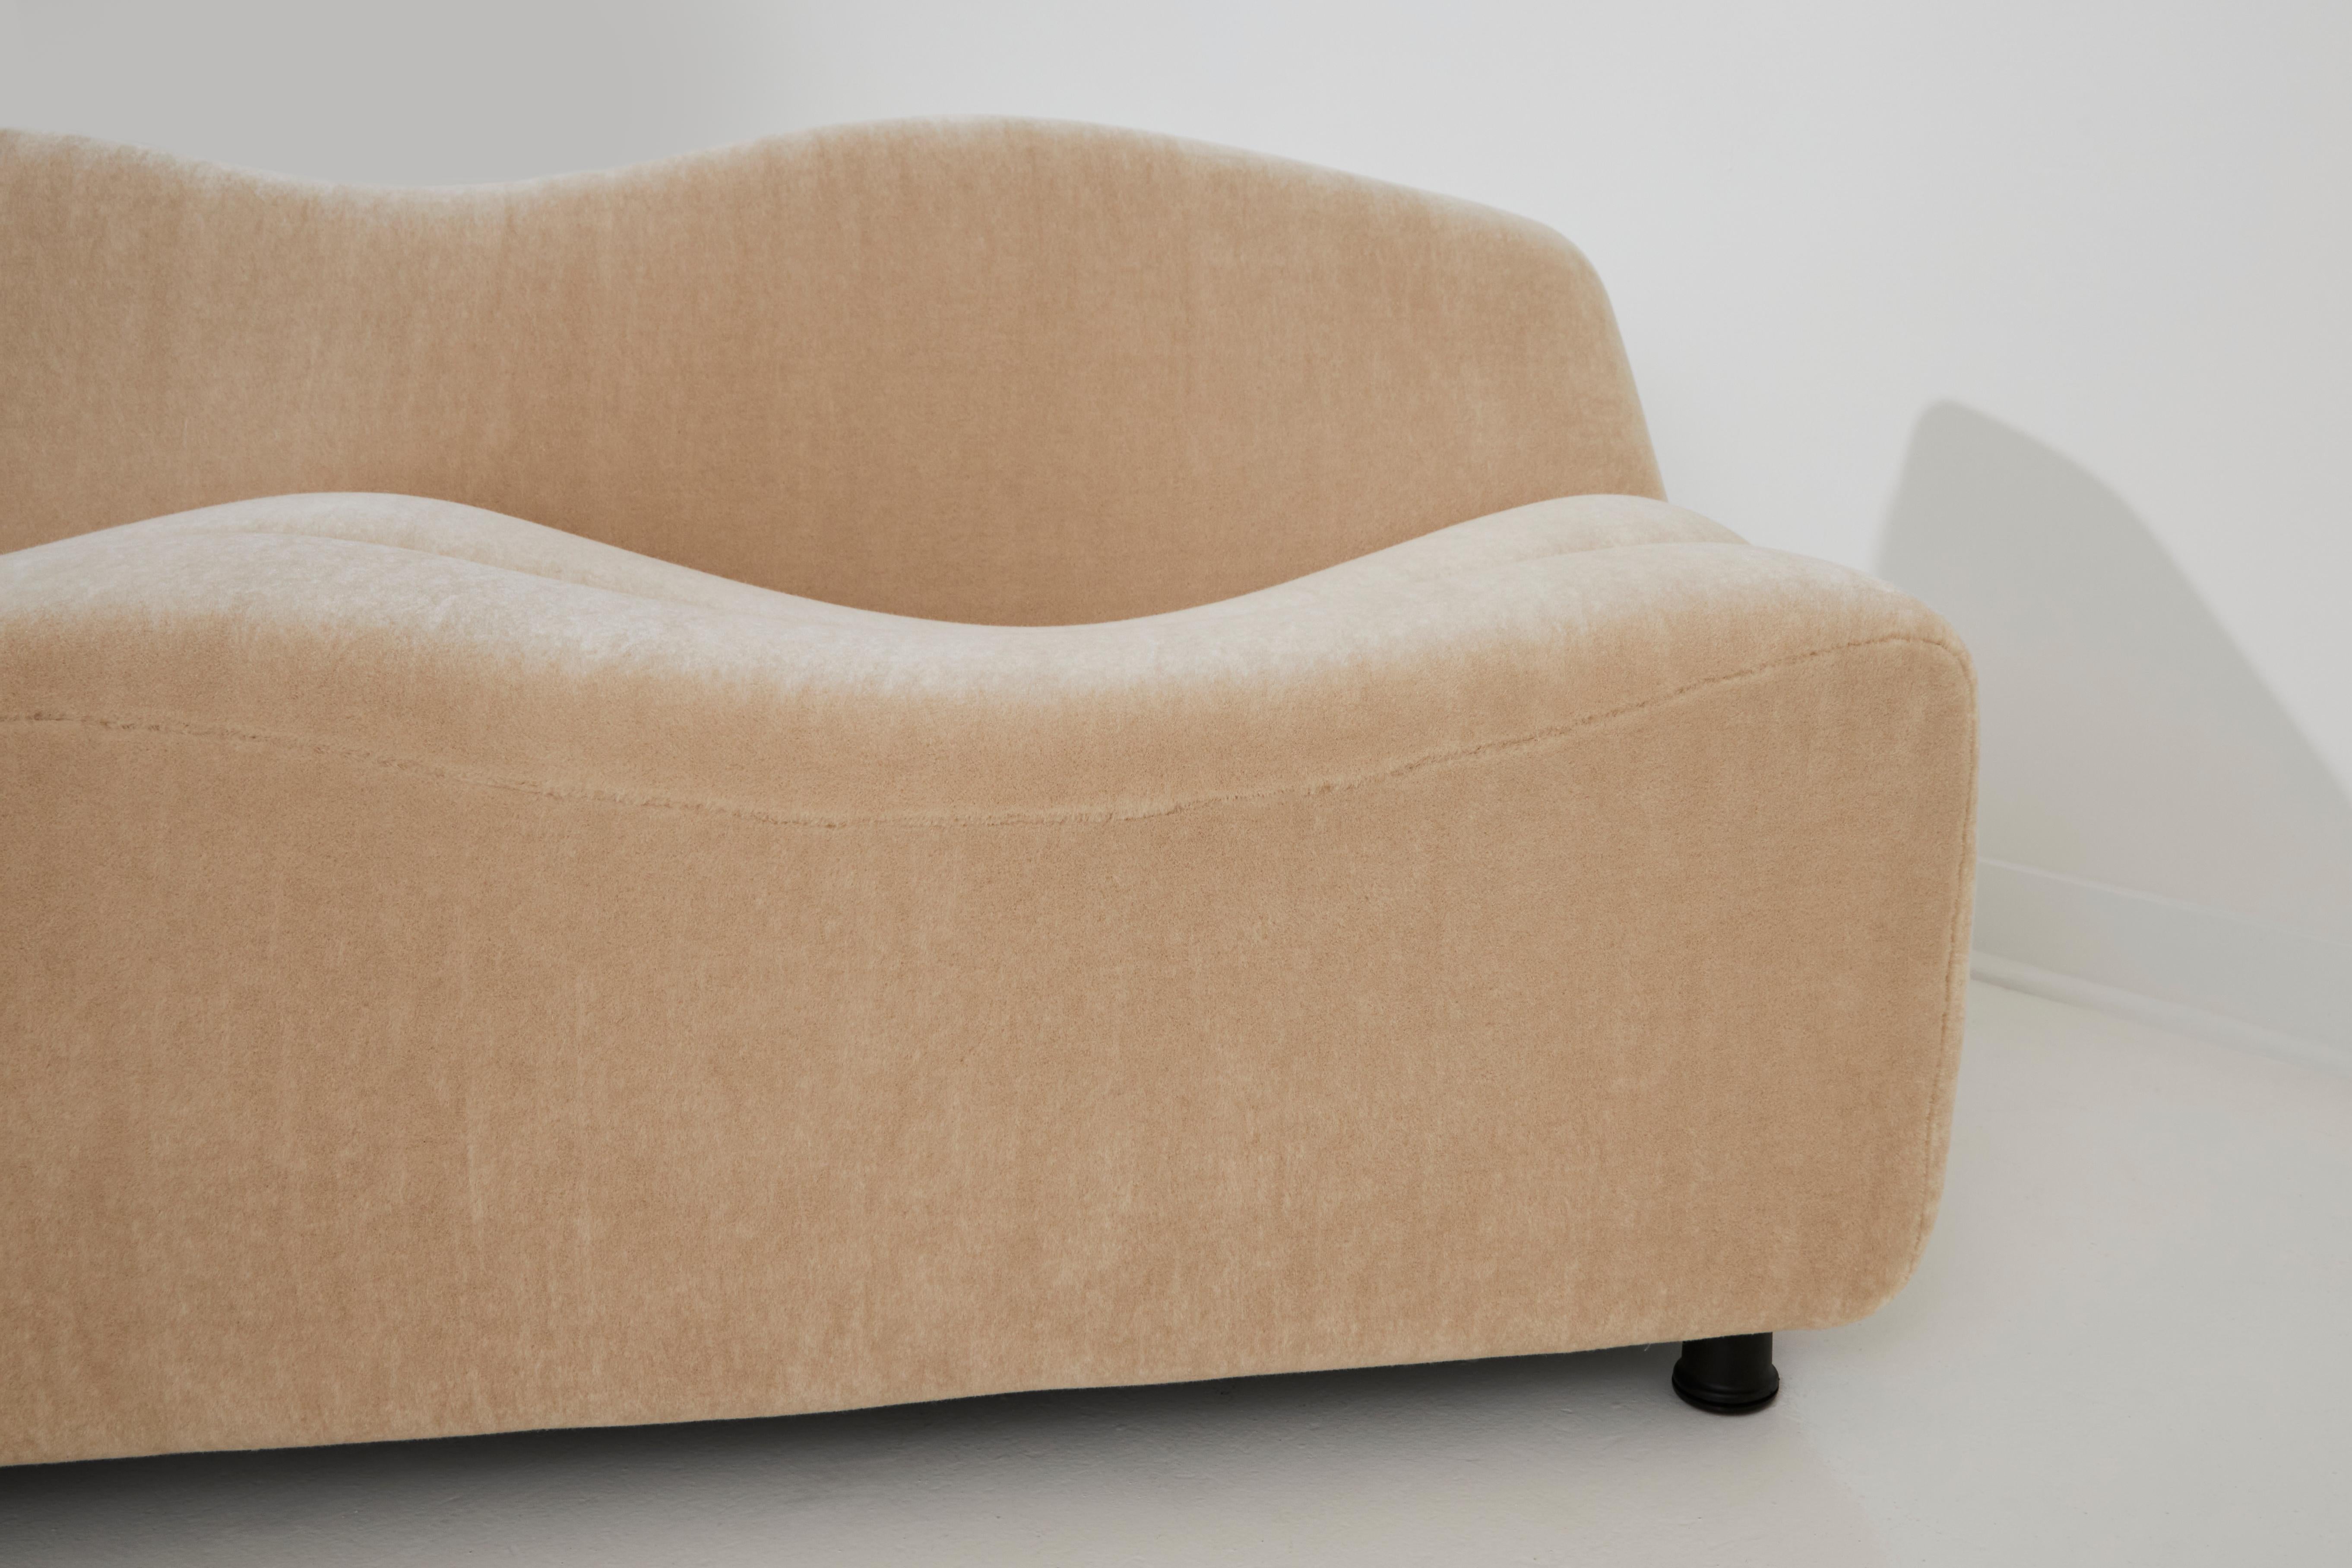 Das ABCD-Sofa, ein Entwurf von Pierre Paulin aus dem Jahr 1968, ist ein Zeugnis seiner innovativen und zukunftsweisenden Designphilosophie. Dieses Sofa ist ein echtes Unikat, das sich durch sein unkonventionelles und sehr markantes Design